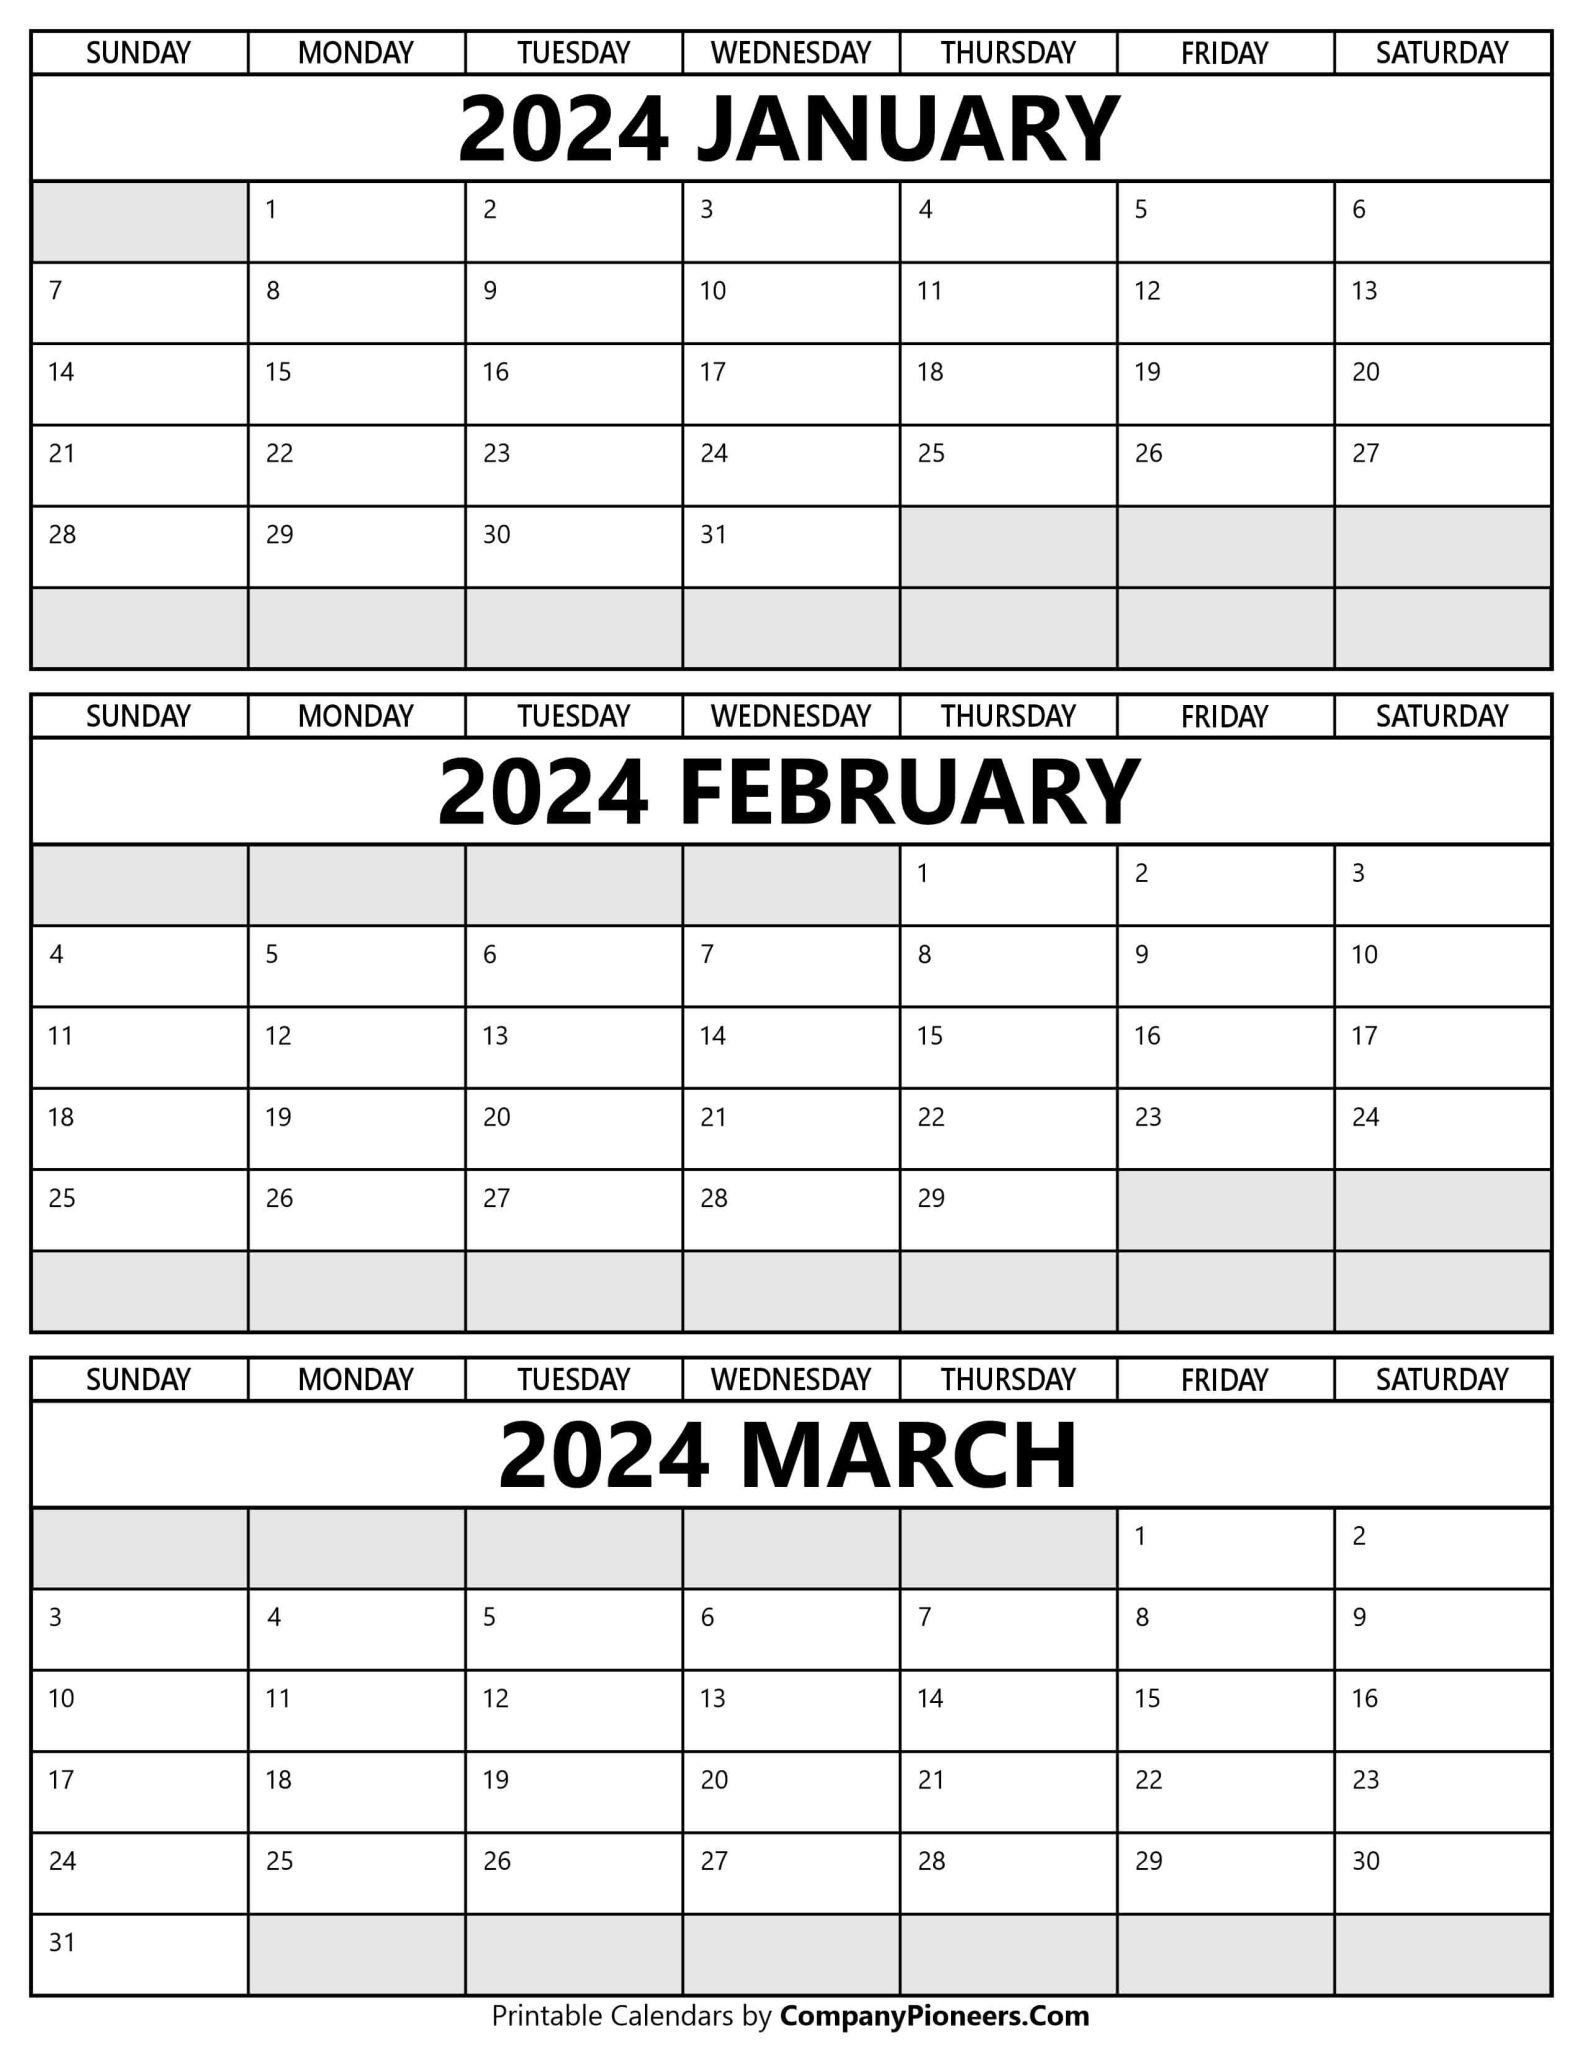 2024 Calendar January To March Calendar Chery Deirdre